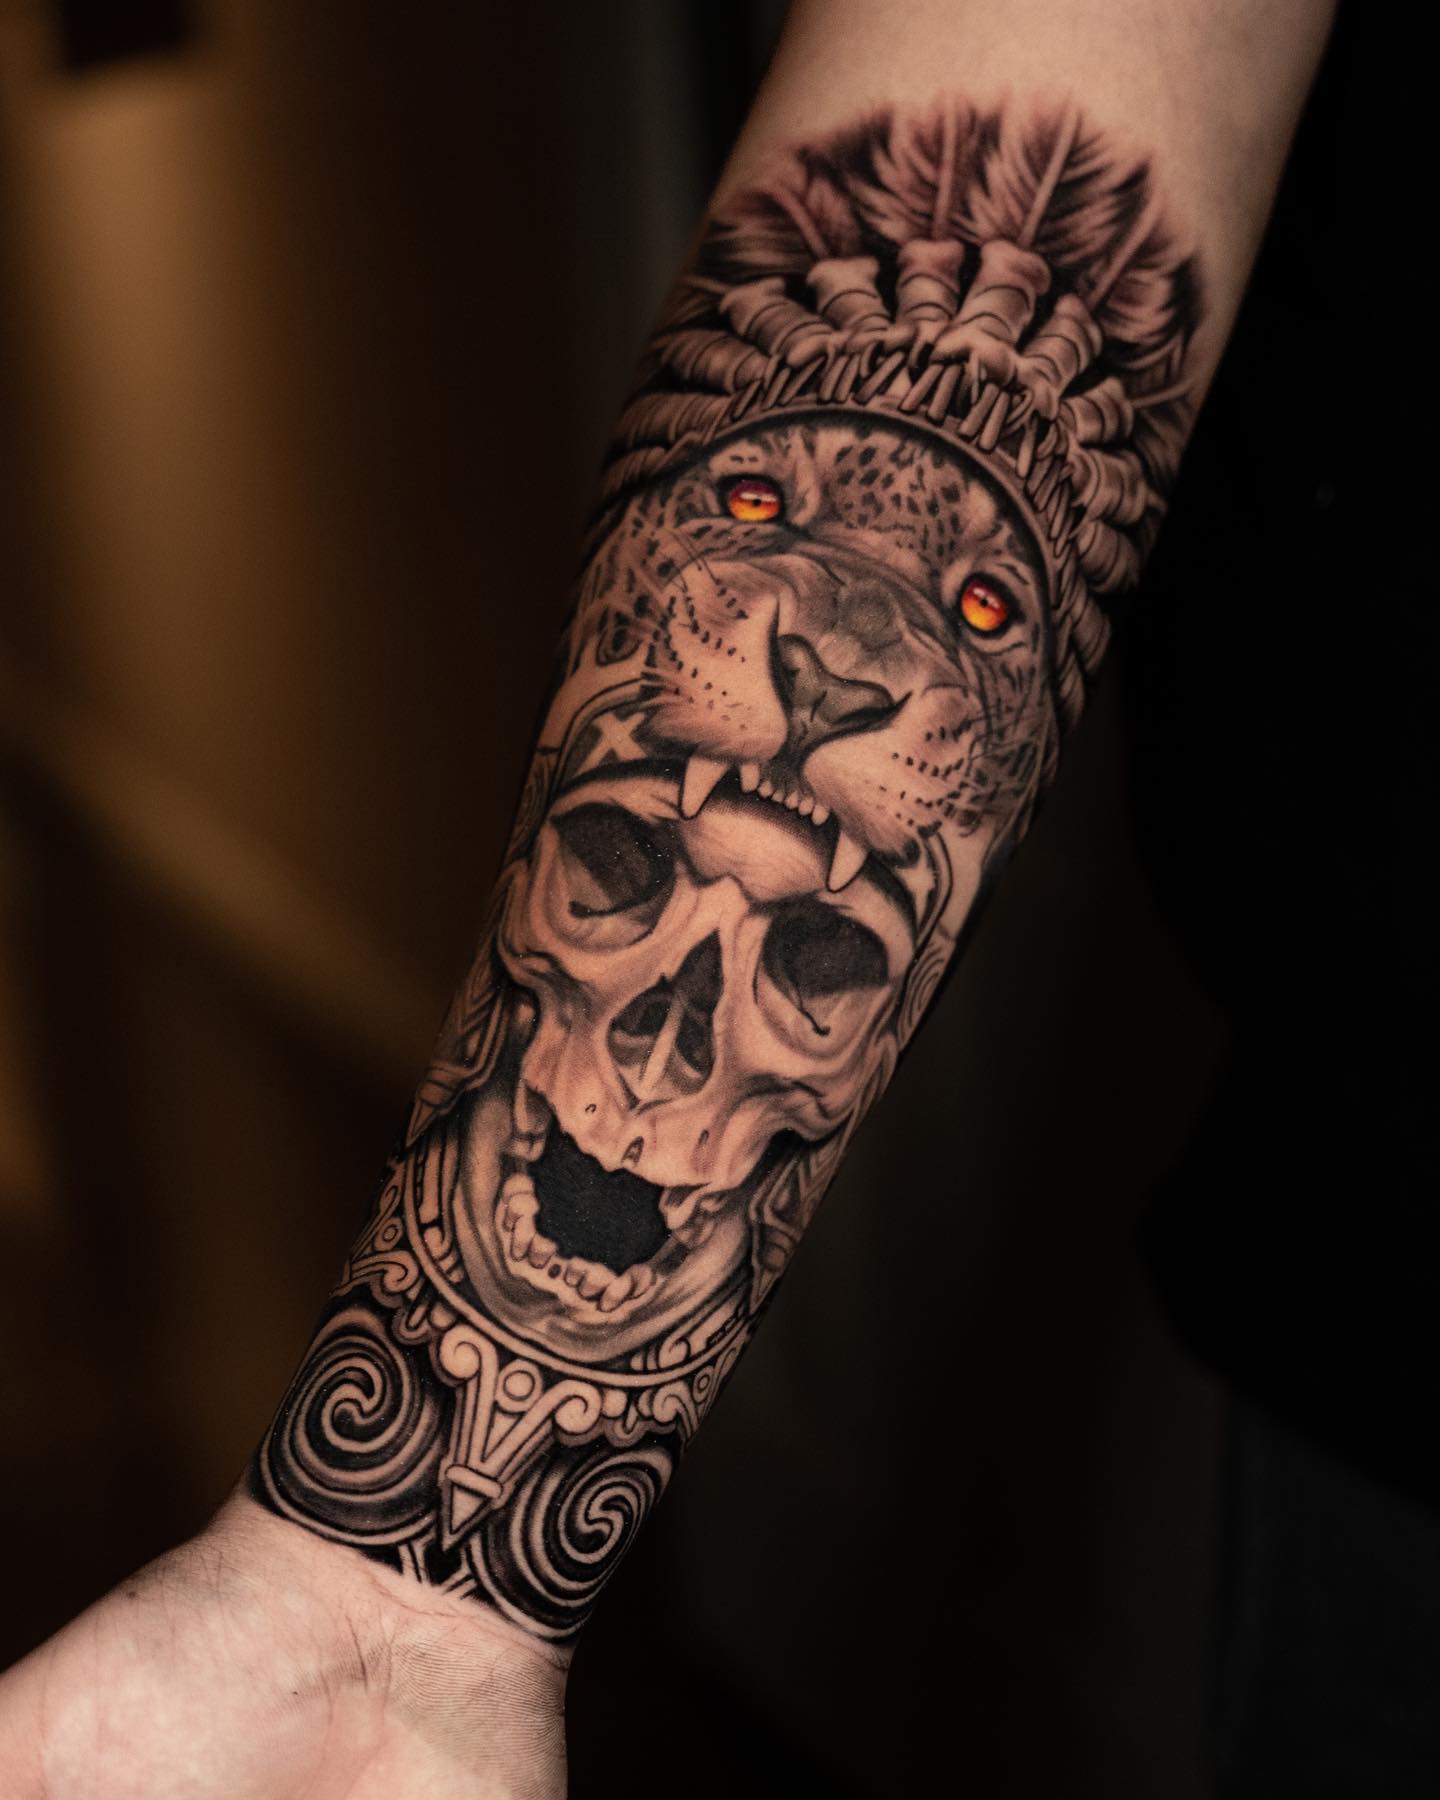 Tatuaż czaszki i lwa